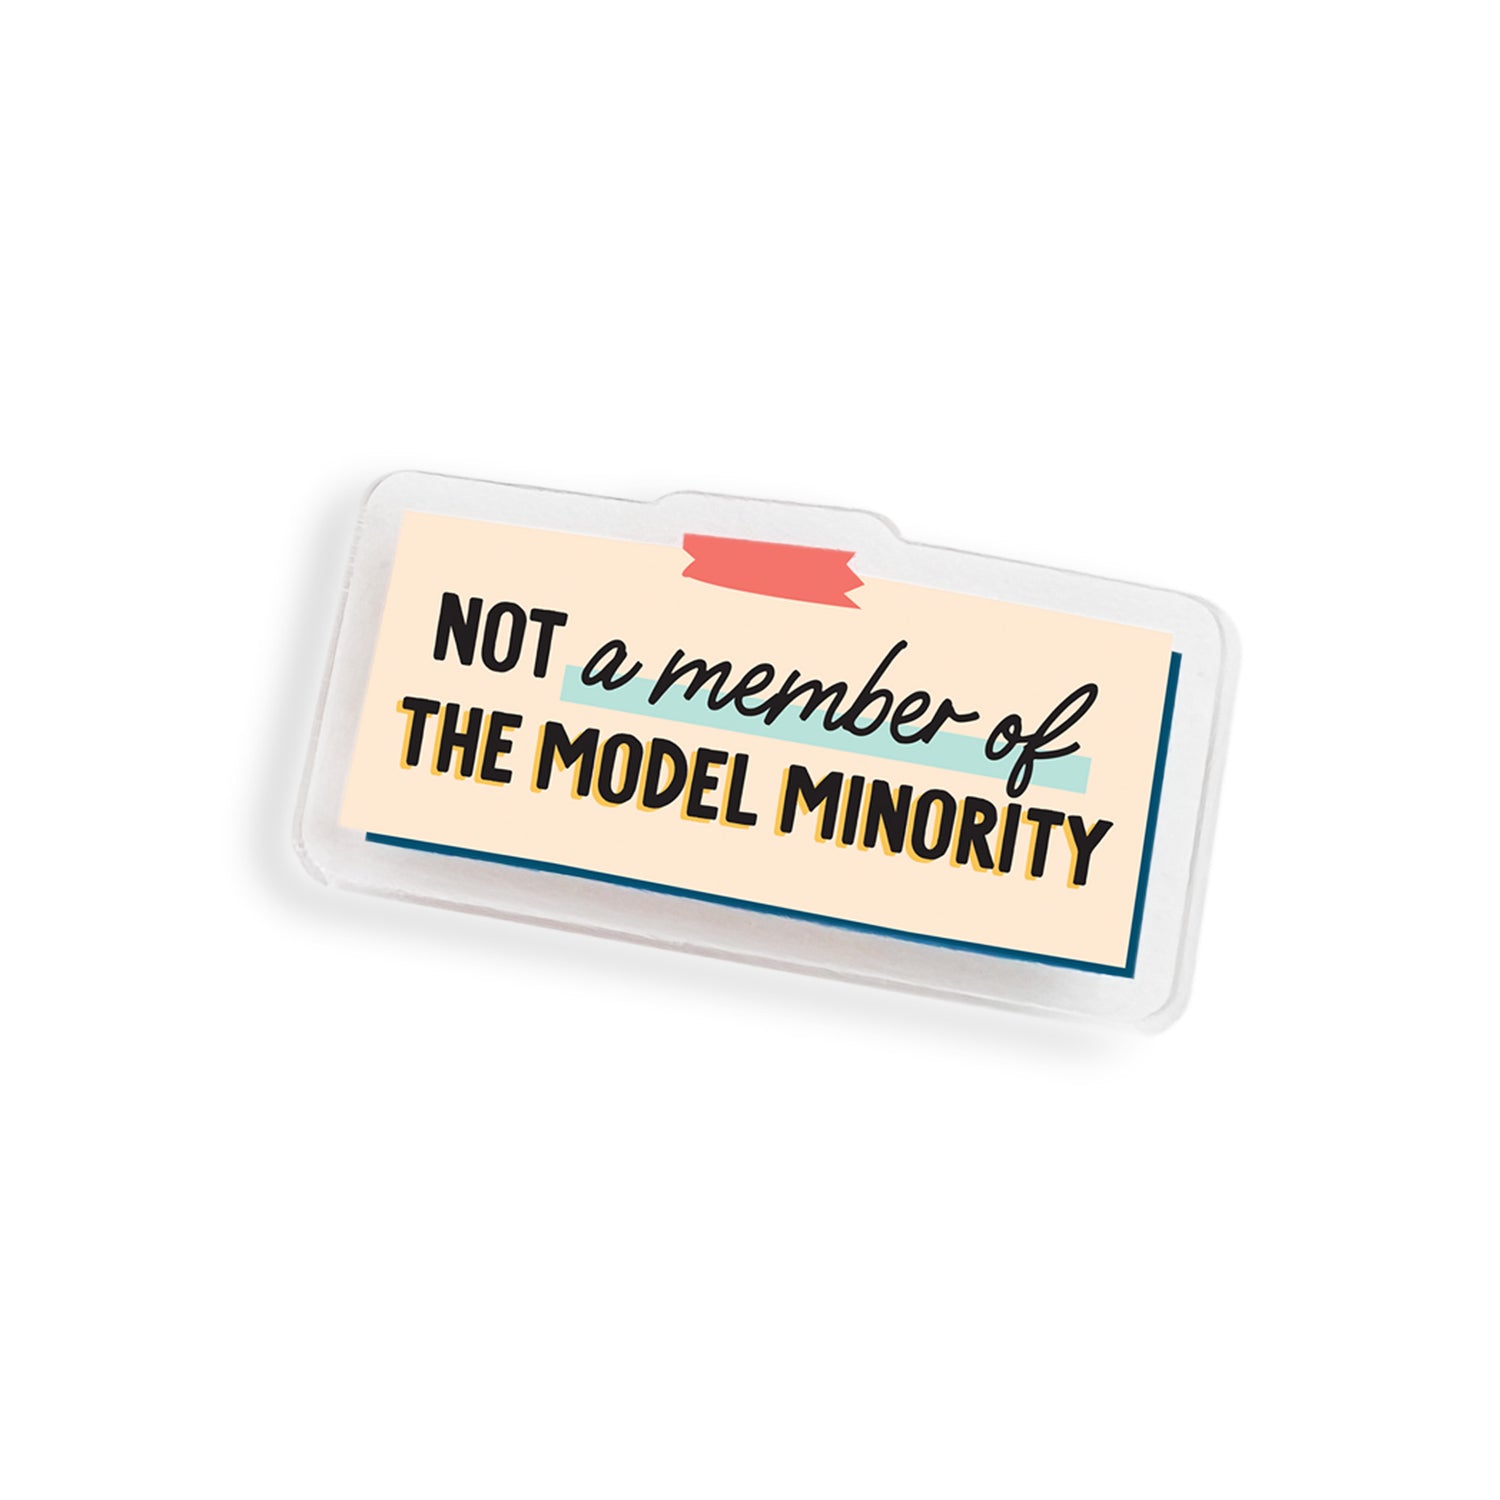 Not a model minority member acrylic pin by I&